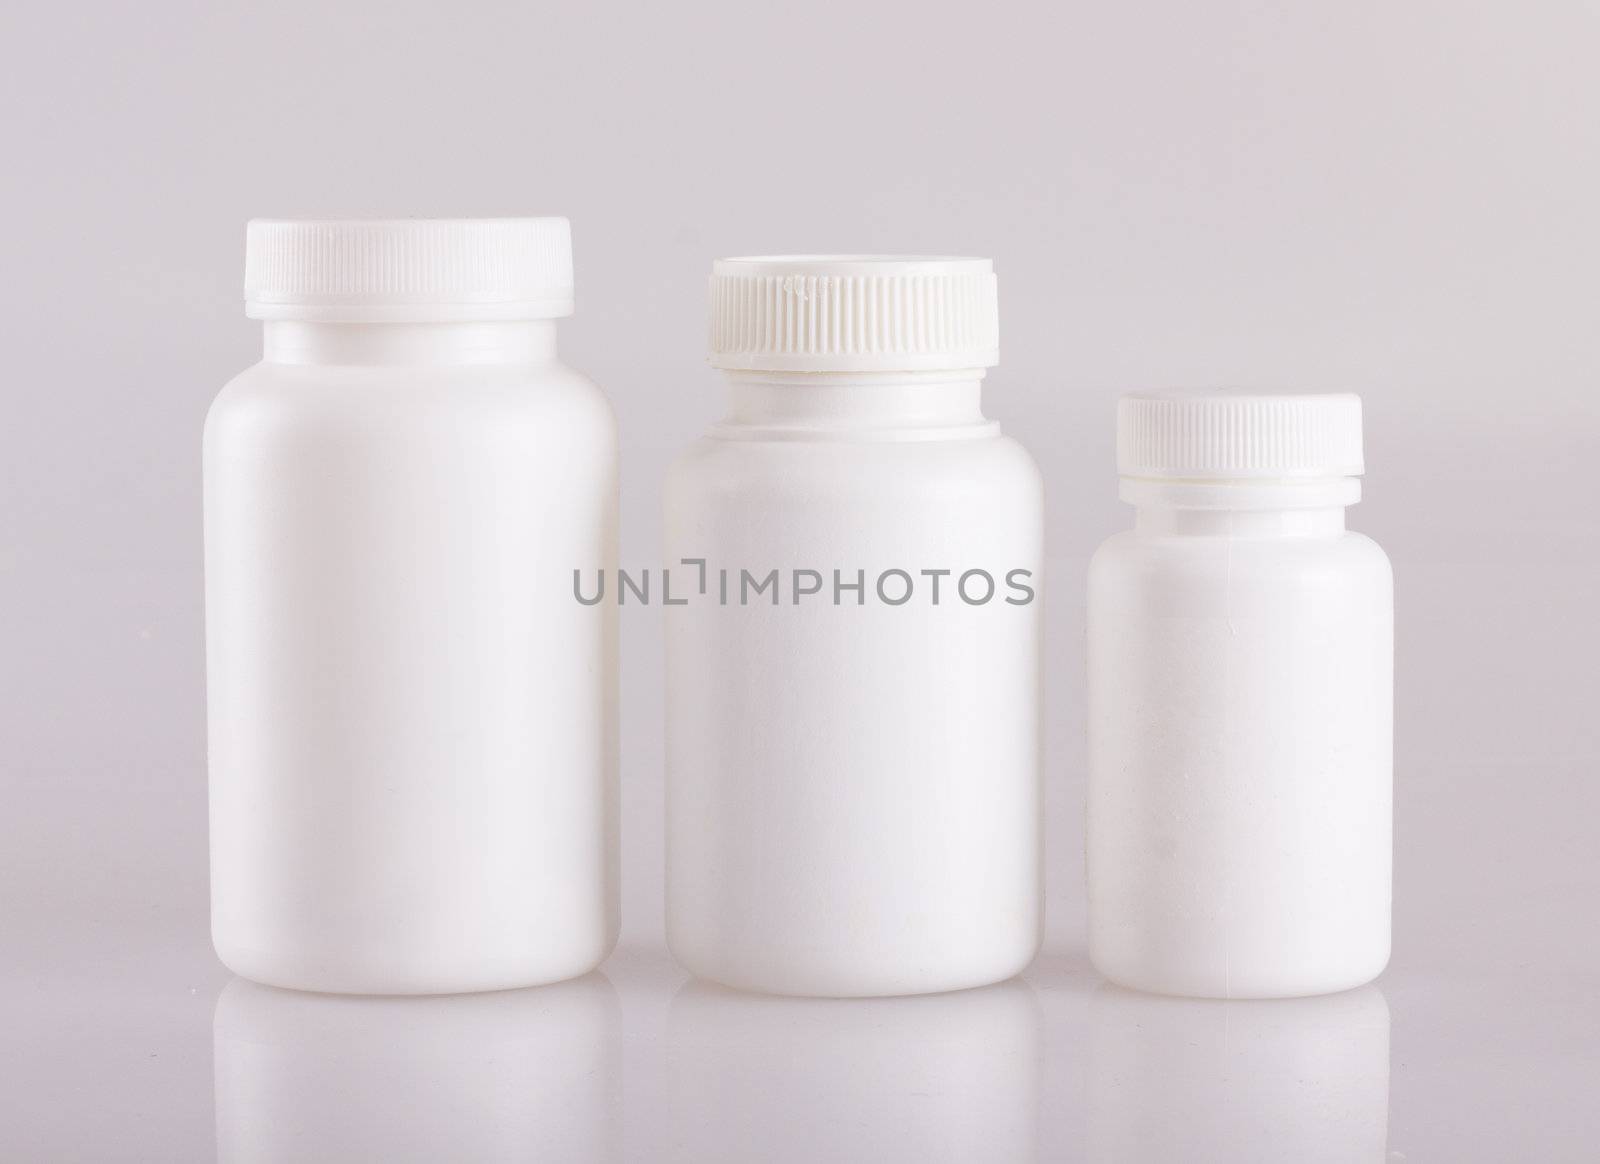 Pill bottles by tehcheesiong